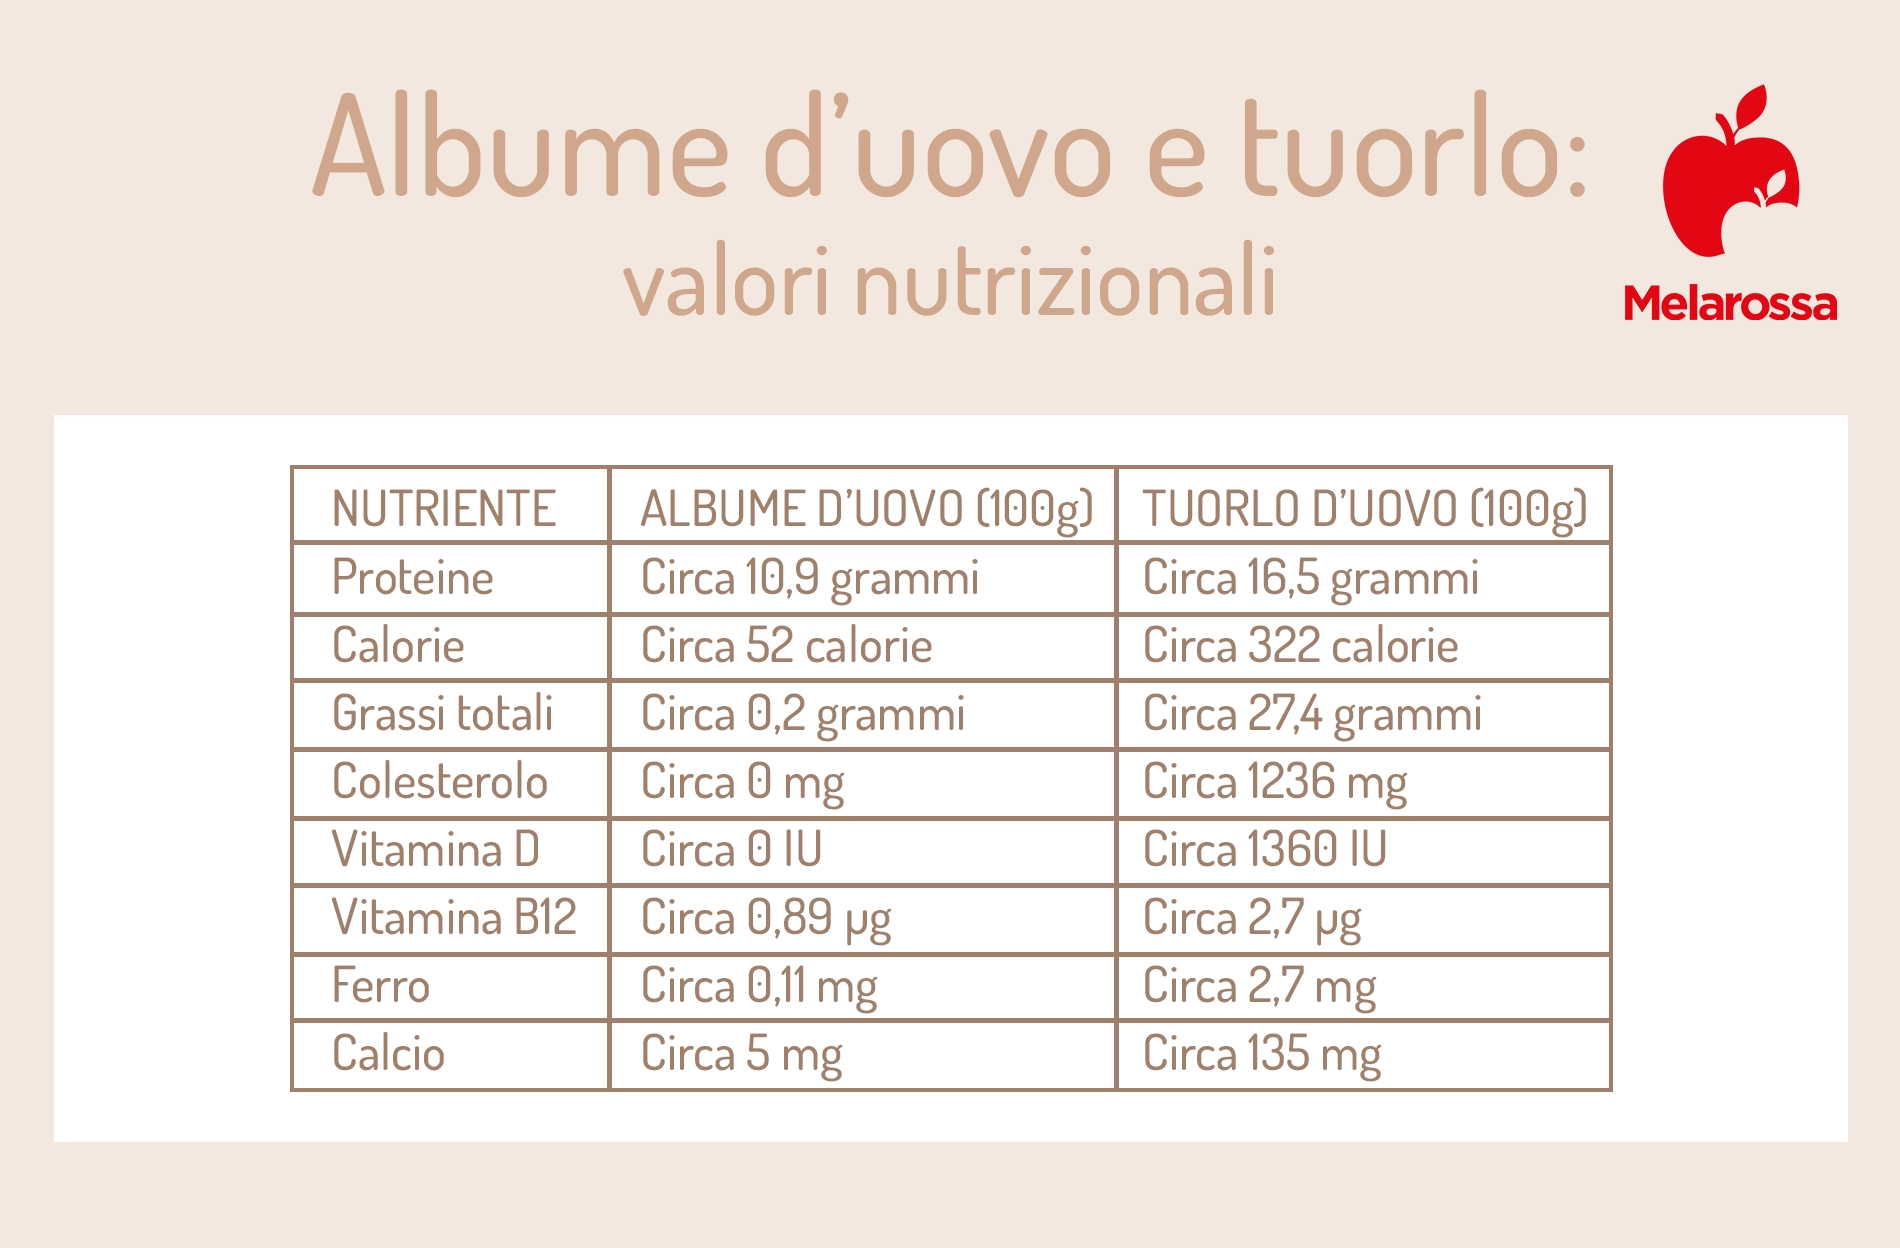 calorie e differenze nutrizionali tra albume e  tuorlo d'uovo